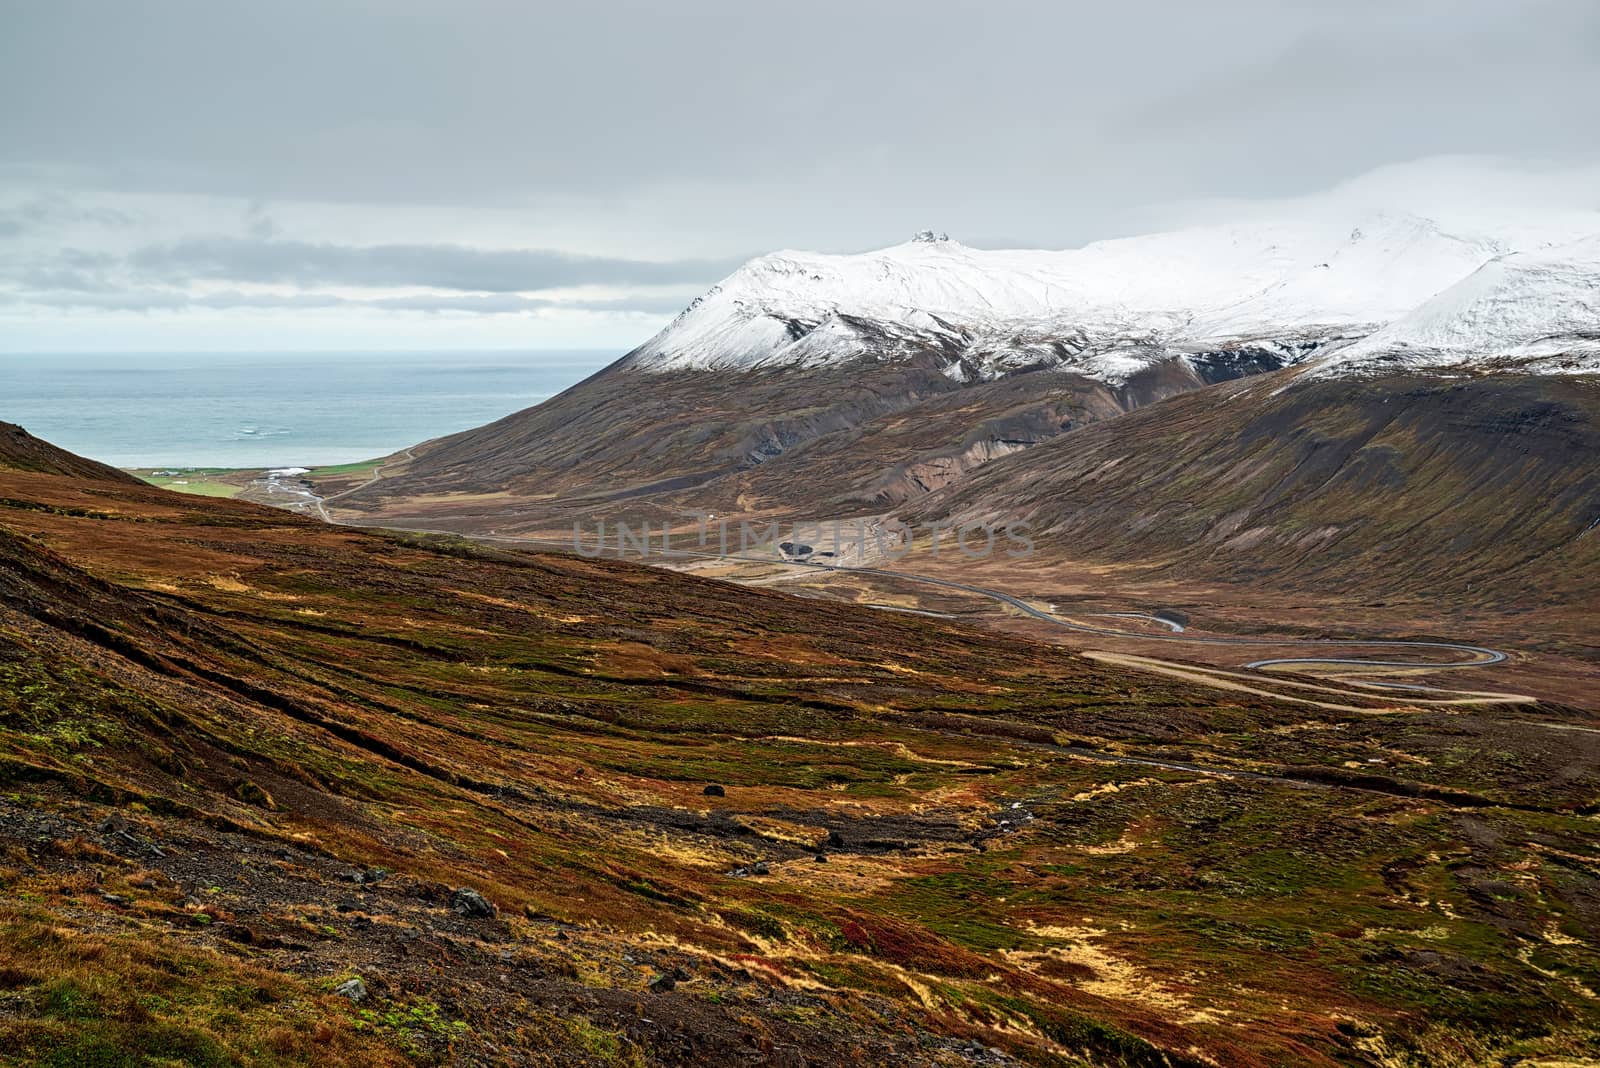 Mountains and view in Borgarfjordur Eystri, Iceland by LuigiMorbidelli